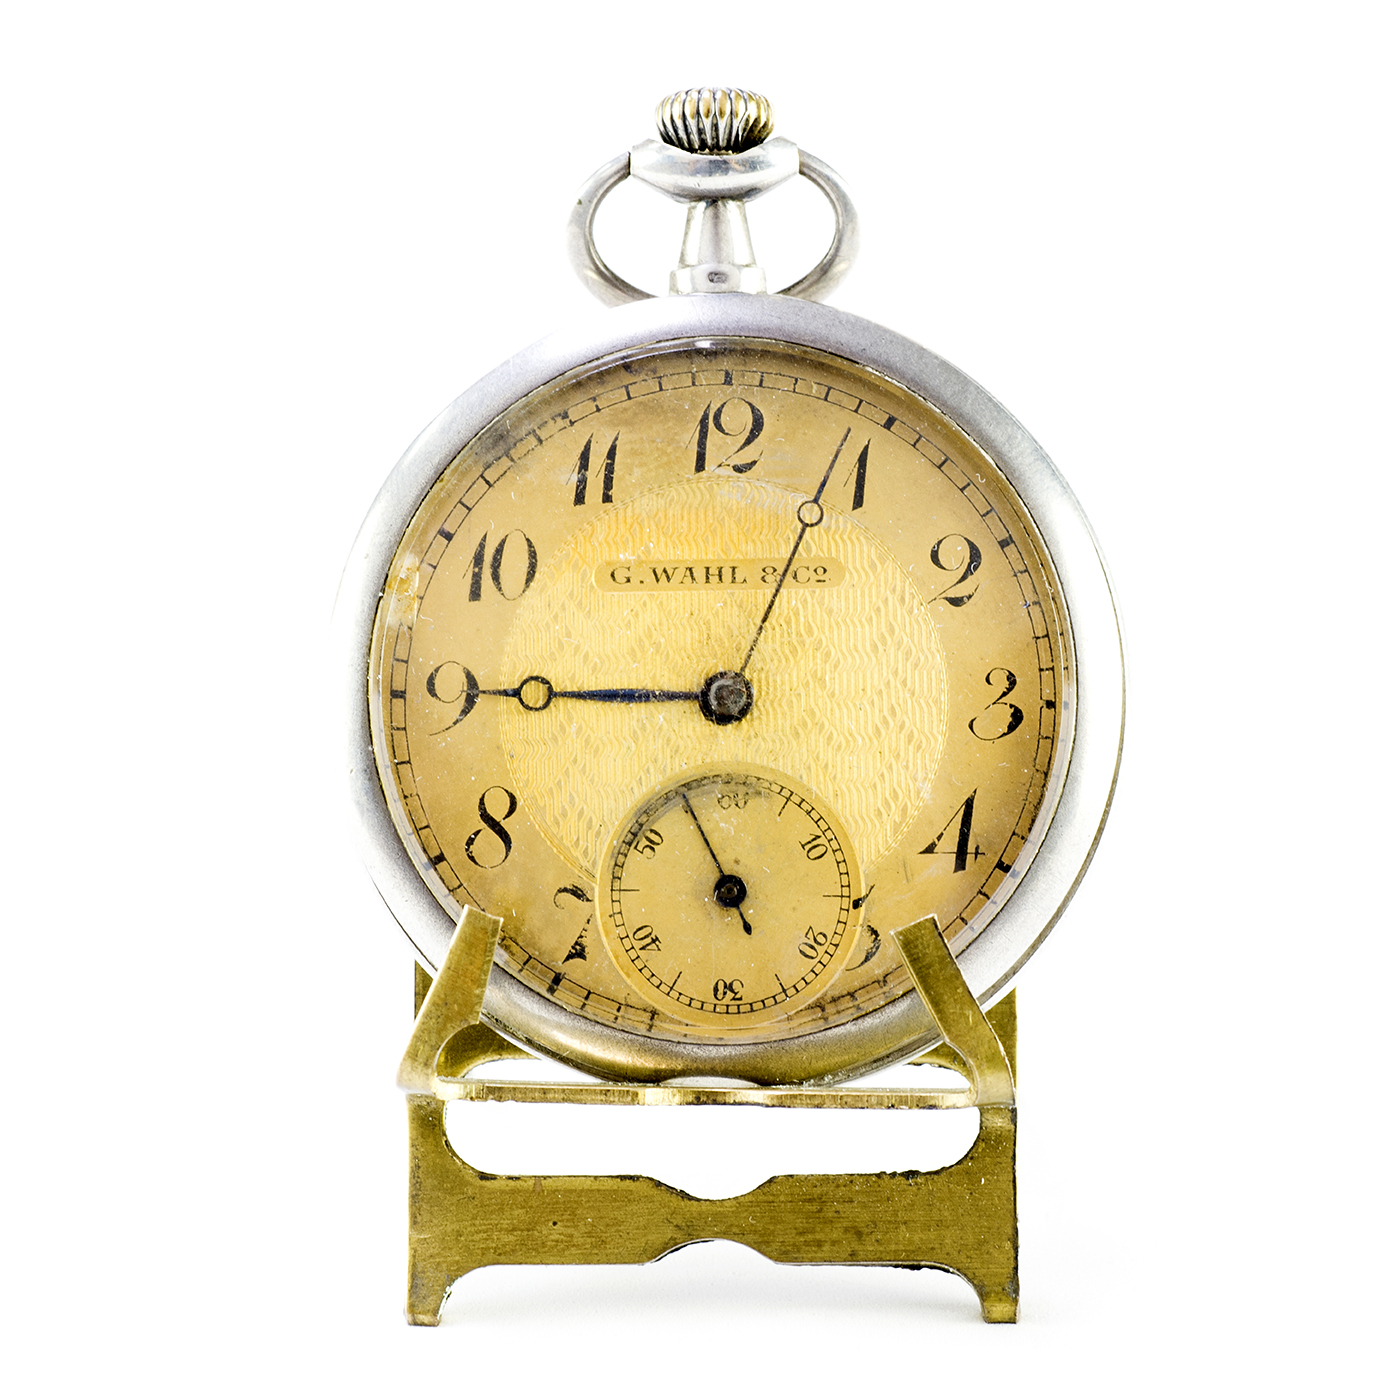 G. WAHL & Co. Reloj de bolsillo, lepine y remontoir. Suiza, ca. 1900.